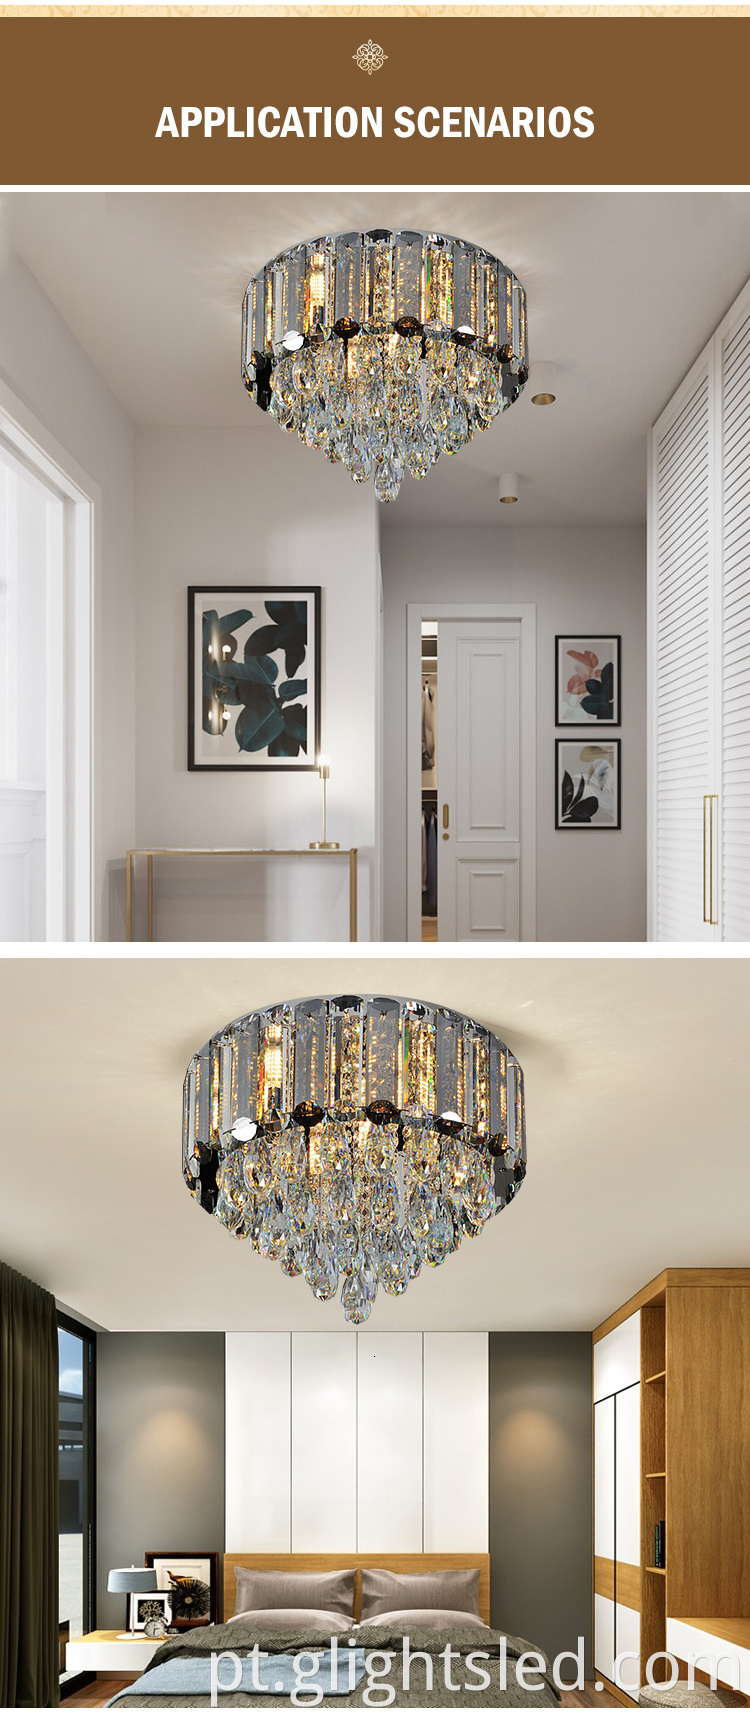 Sala de estar com economia de energia moderna de aço inoxidável luxuoso branco K9 cristal led lustre pendente